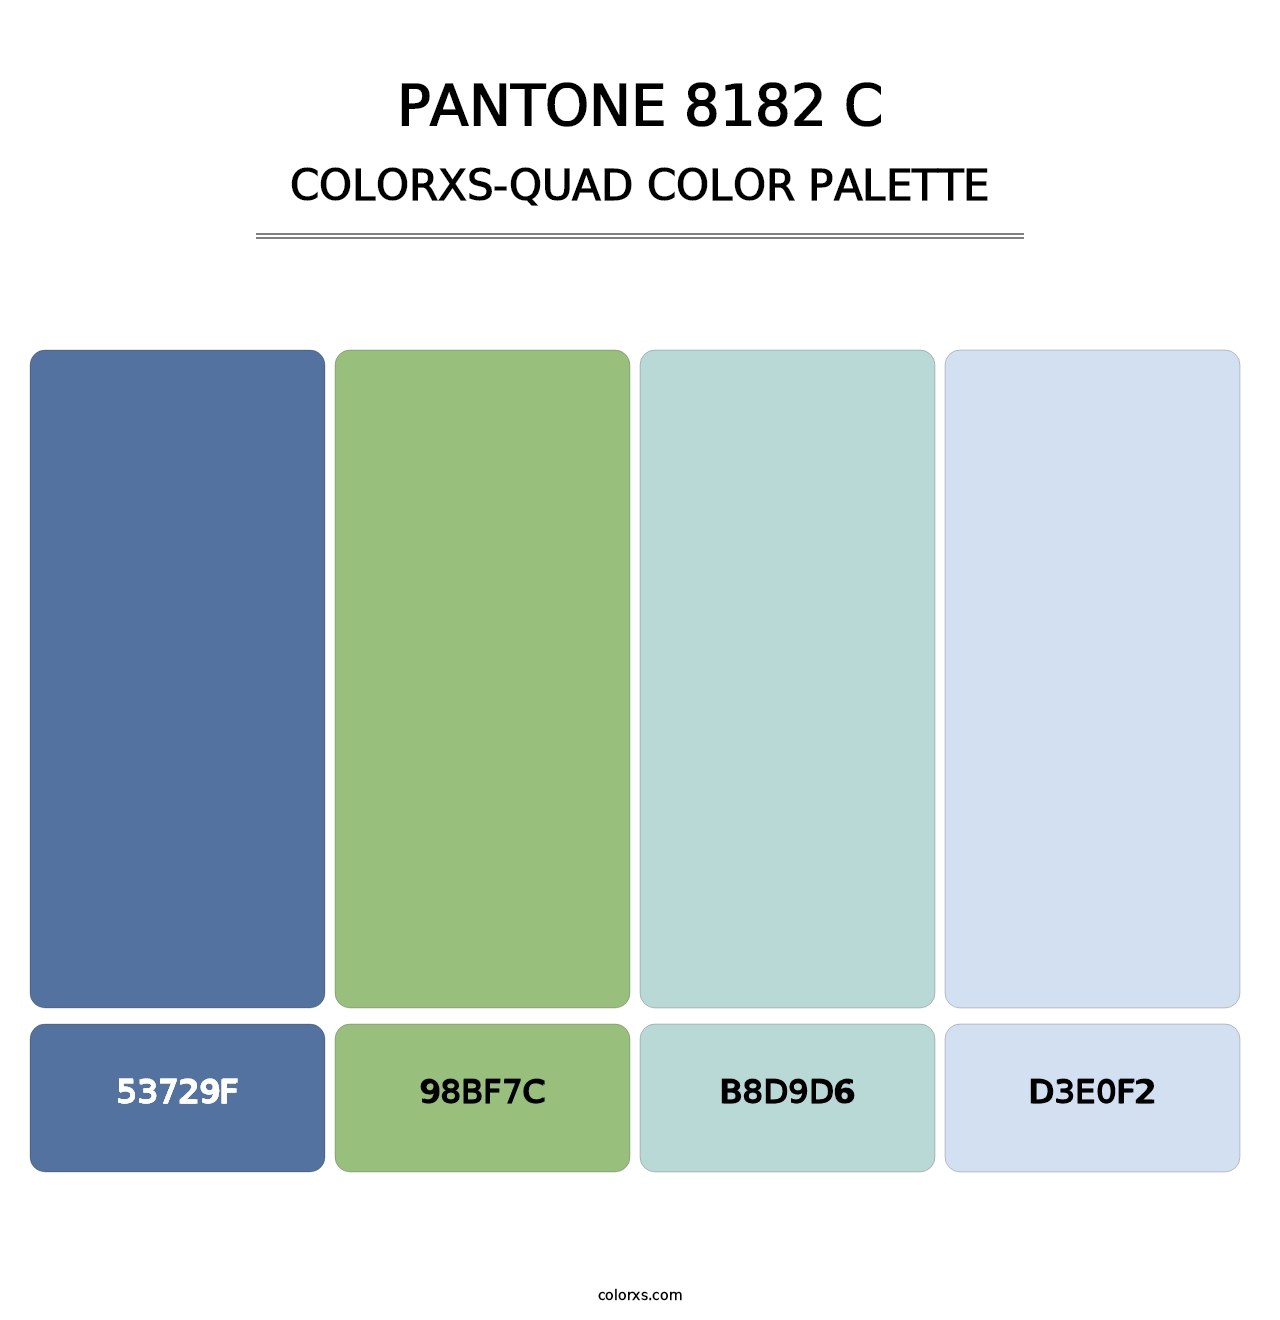 PANTONE 8182 C - Colorxs Quad Palette